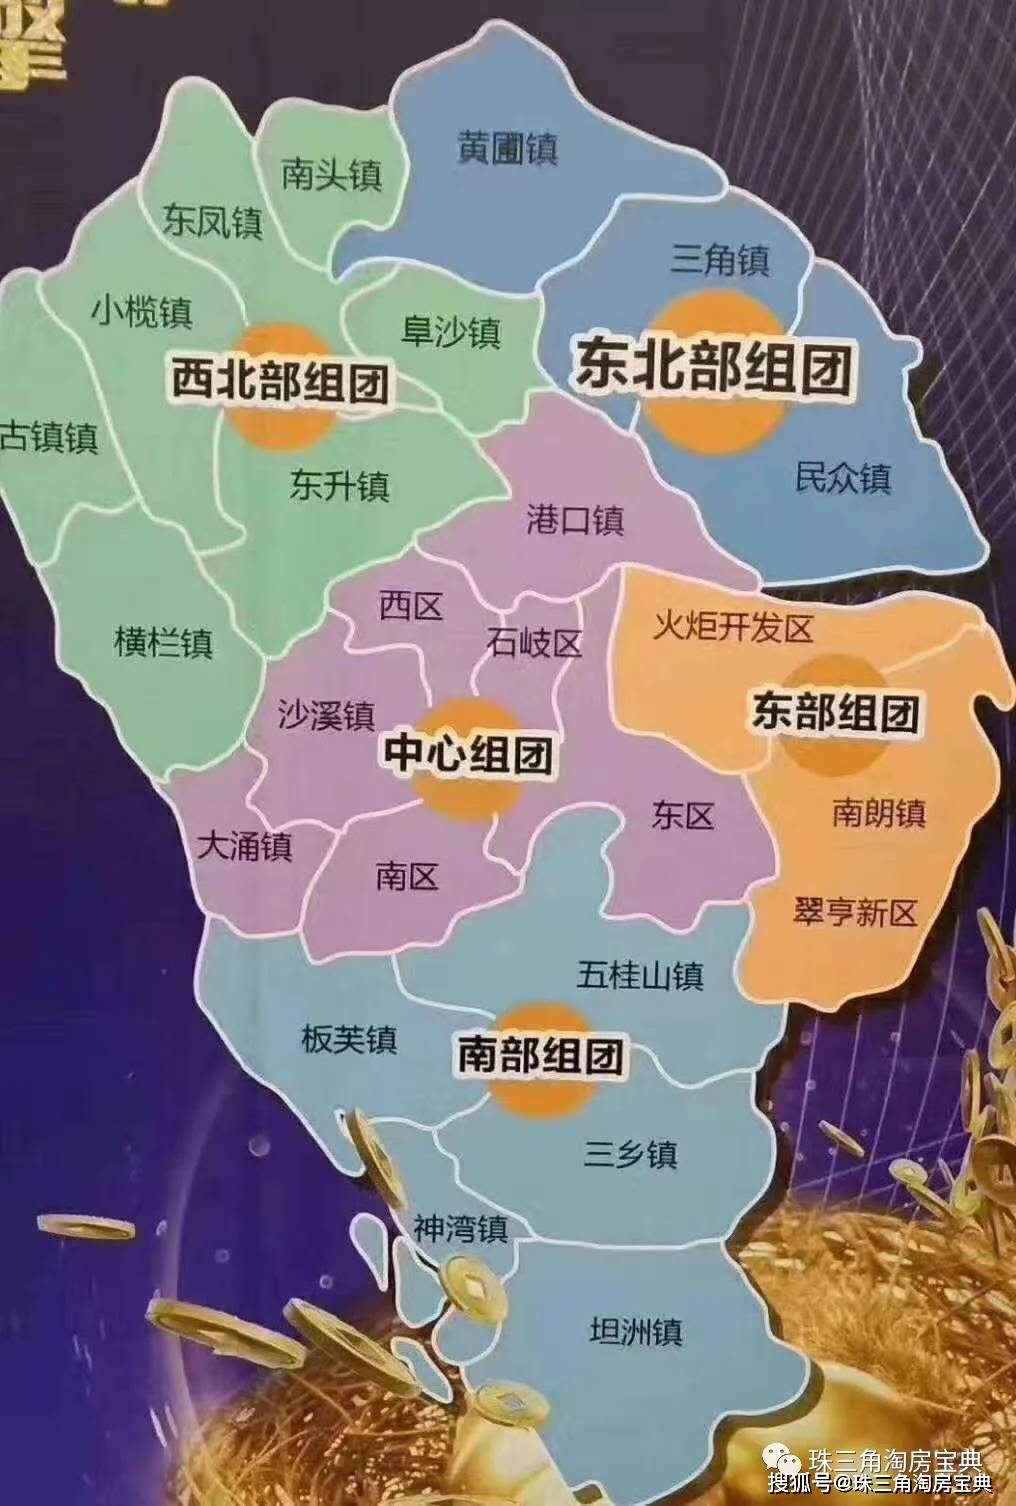 中山市由6个街道,18个镇共同组成,其中我们单从行政区域划分就可以